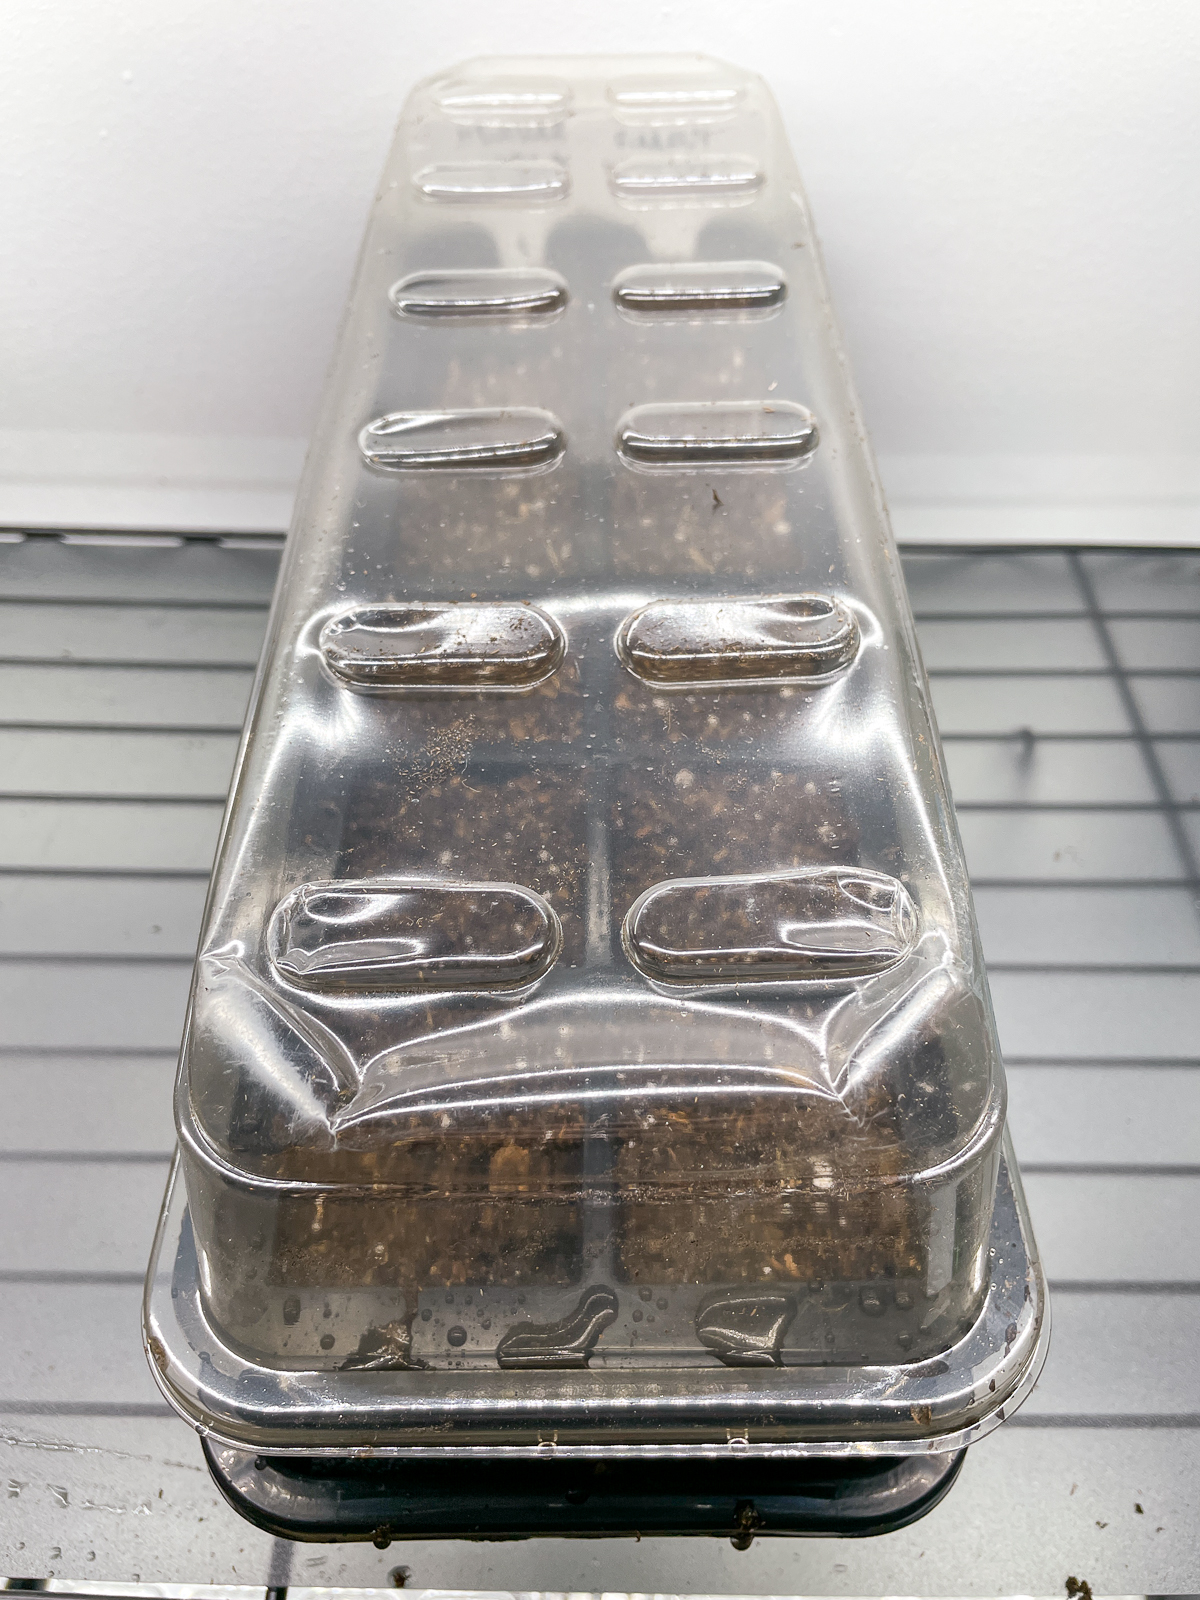 heuchera seed tray with humidity dome